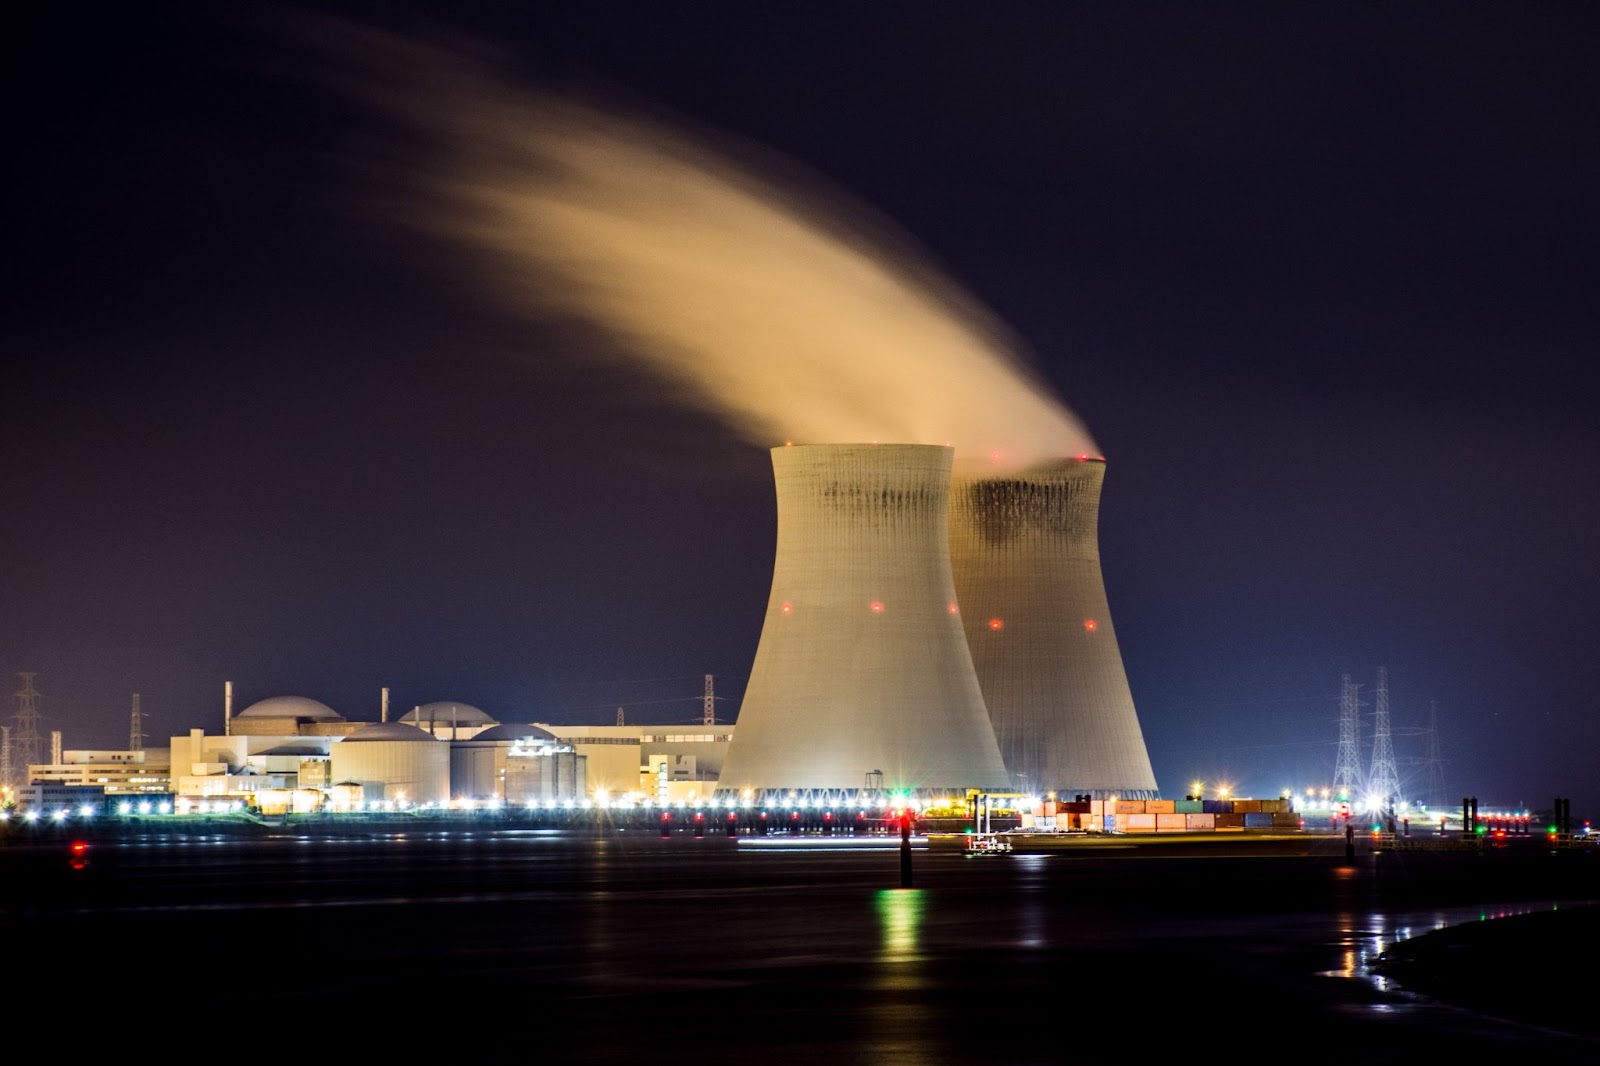 imagem ilustrativa de uma usina nuclear — tecnologia do ano de nascimento 1951